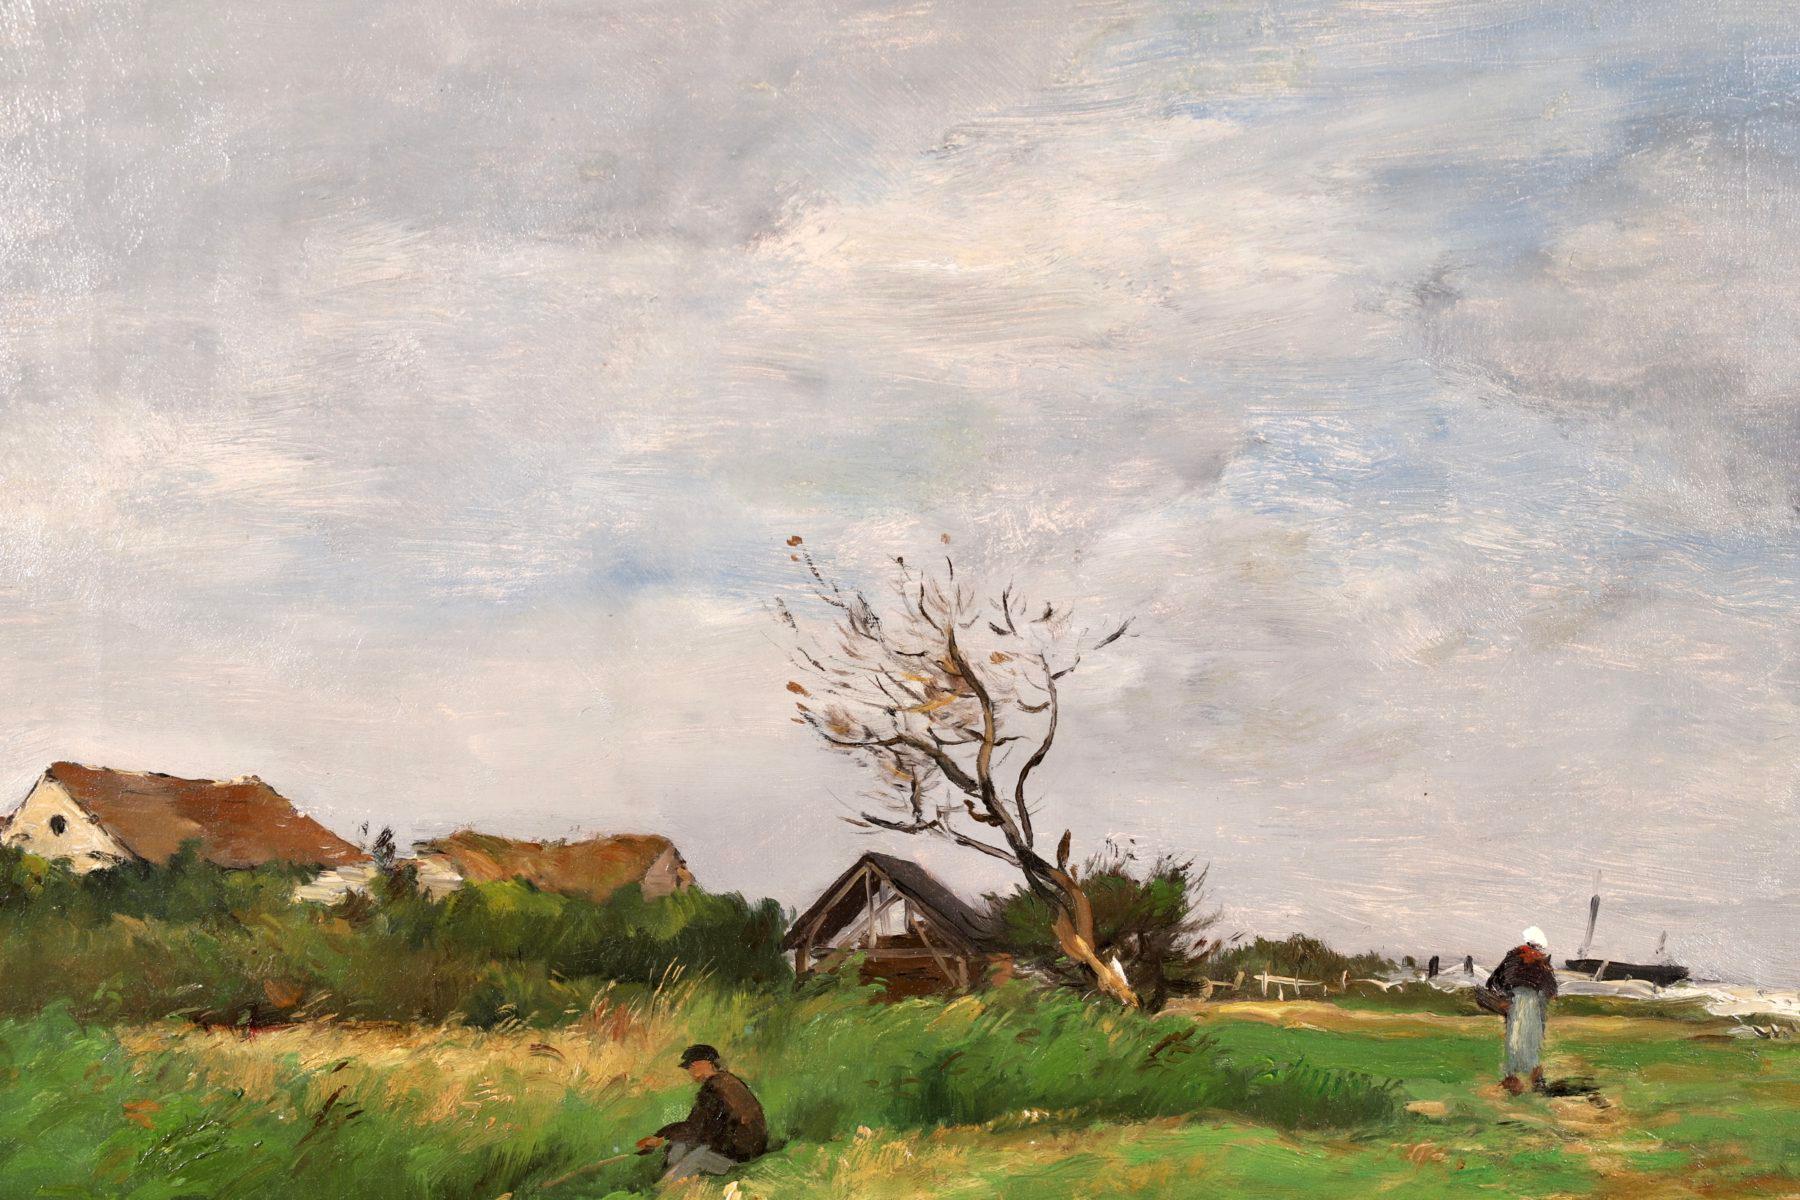 Une belle huile sur toile du peintre impressionniste français Jean Baptiste Antoine Guillemet. La pièce représente la vue d'un homme pêchant dans un ruisseau au bord de la mer et d'une femme marchant sur le chemin derrière lui.

Signature :
Signé en